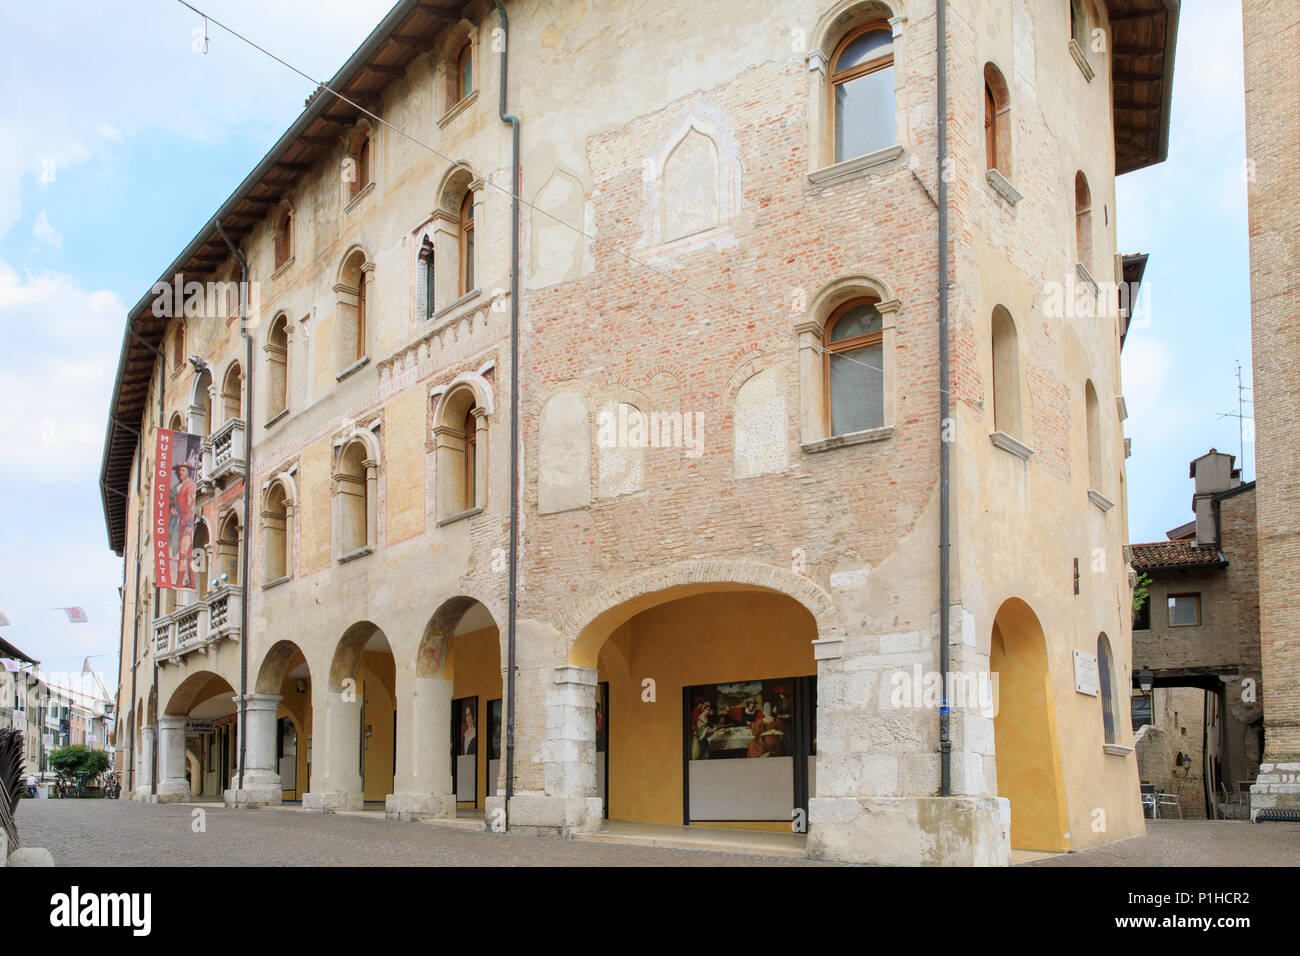 Palazzo Ricchieri, home to the Museo Civico d'Arte, Pordenone, Italy. Stock Photo